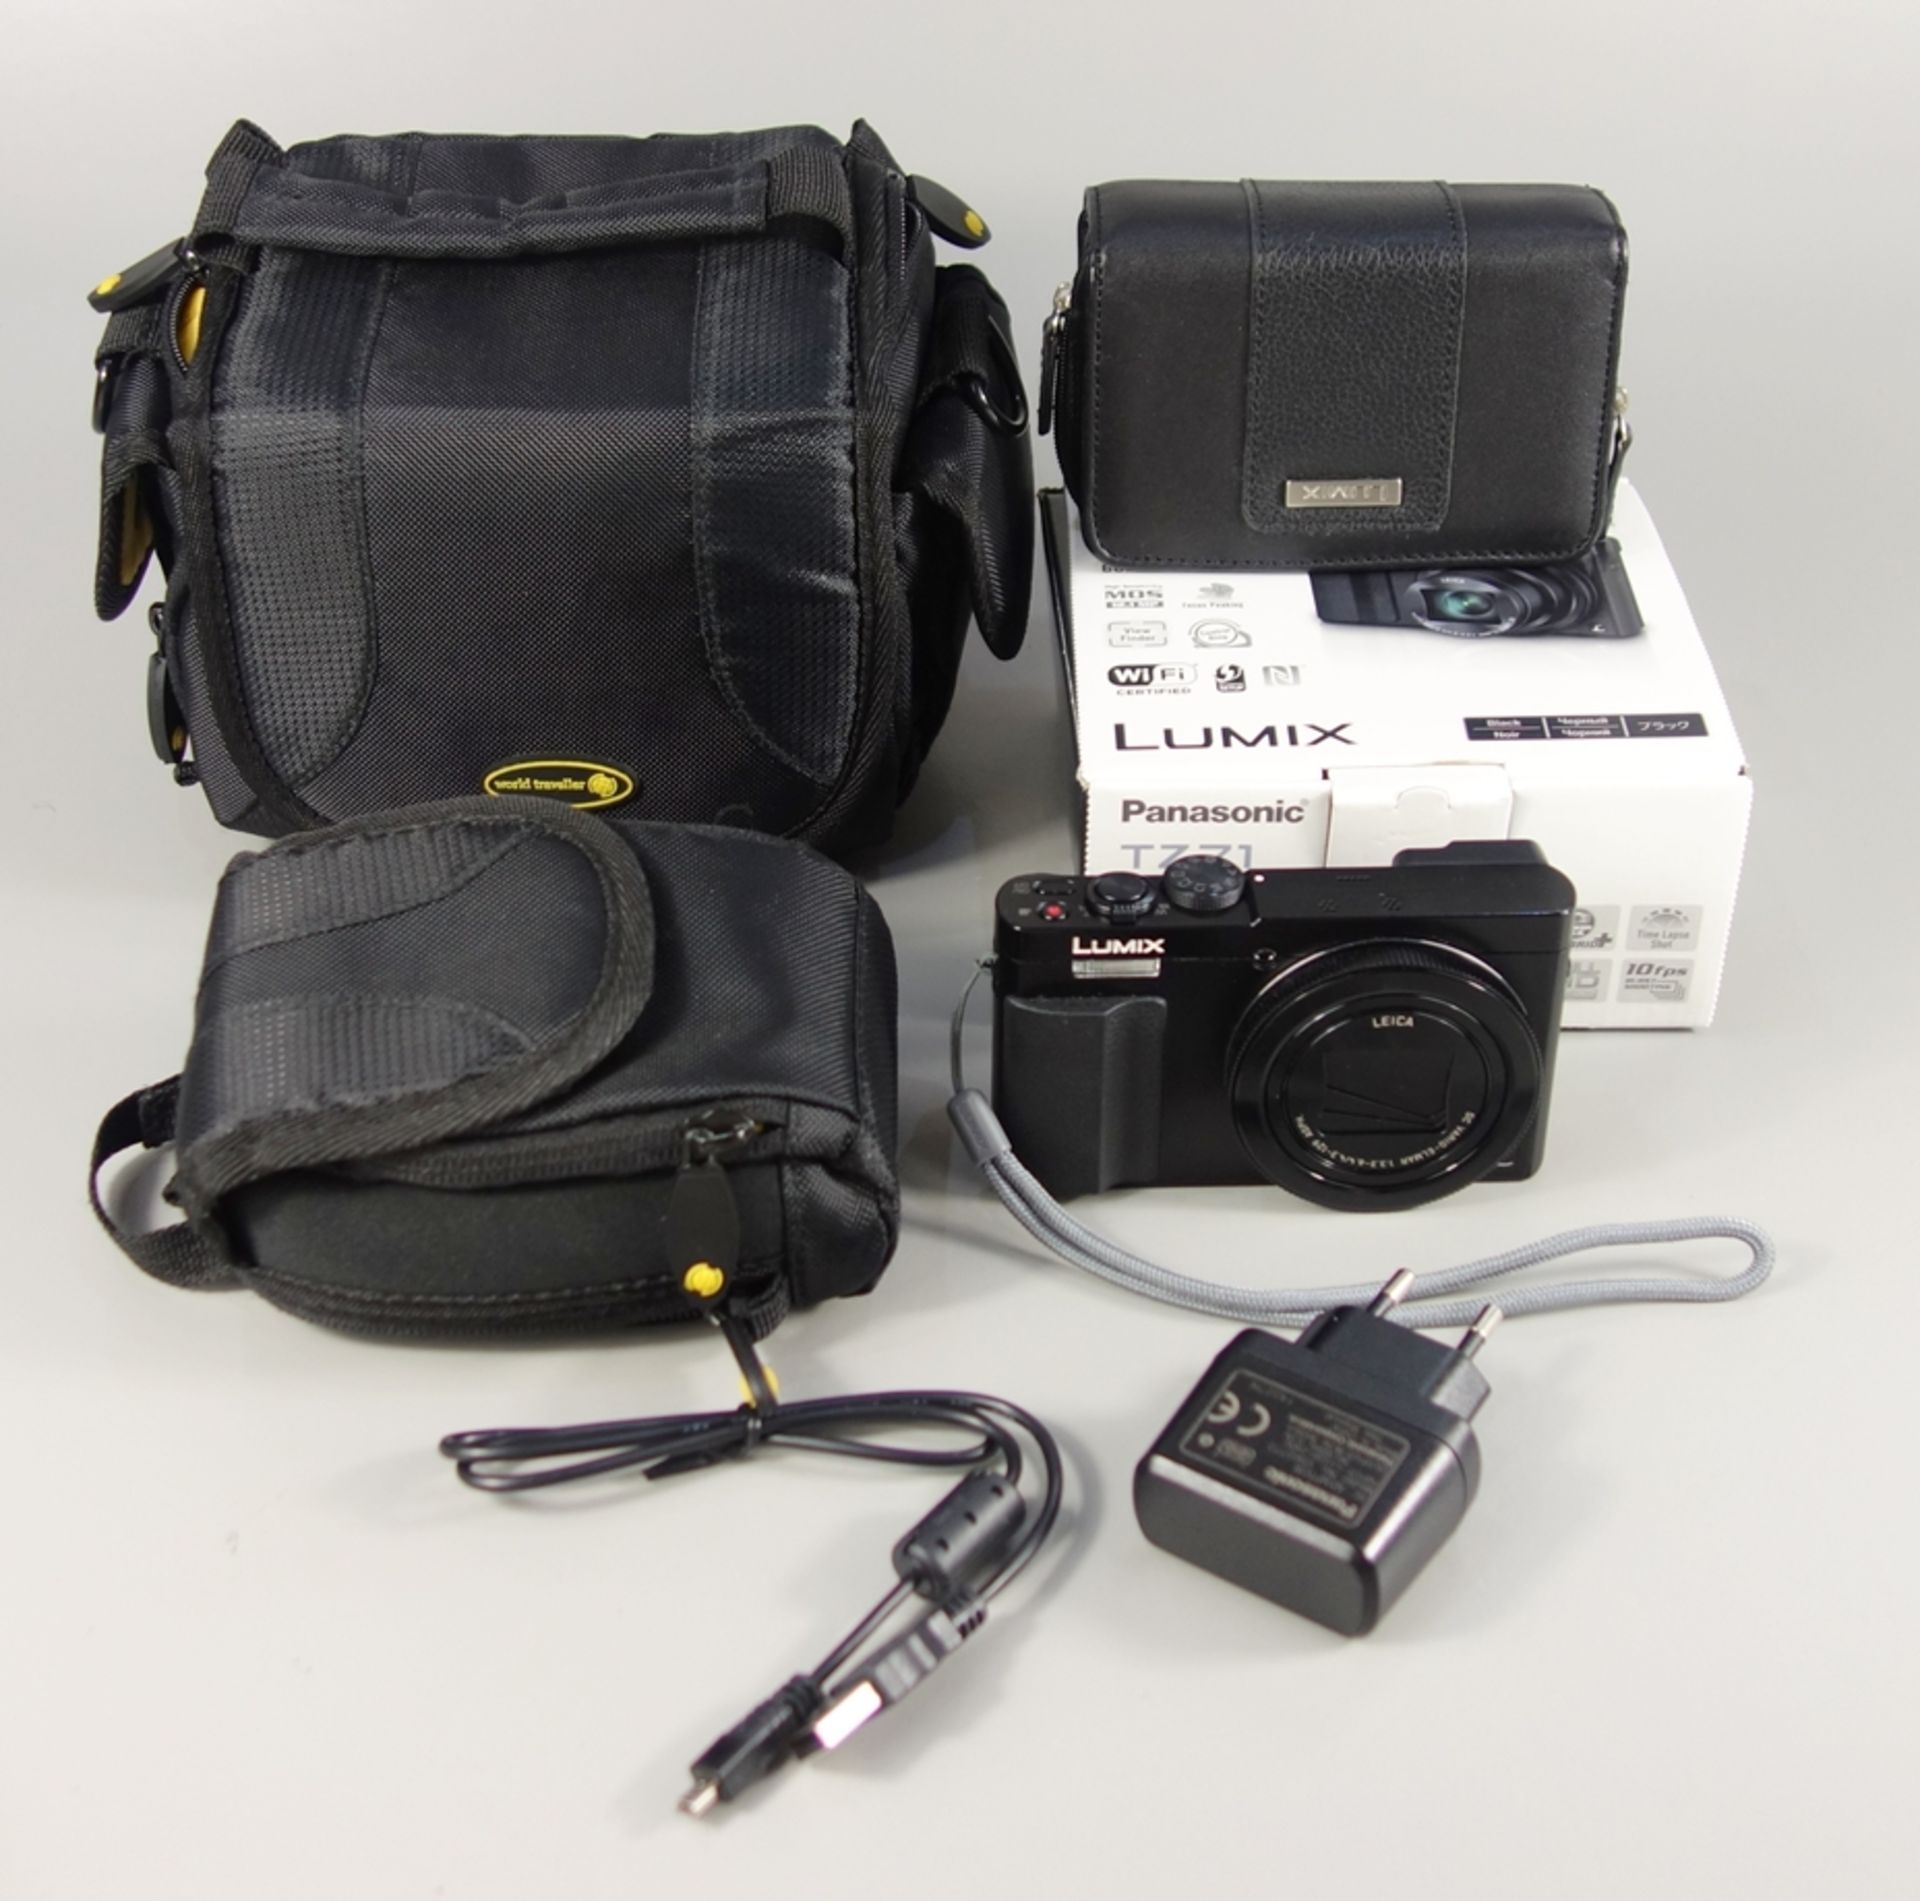 Digitalkamera Panasonic DMC-TZ71 Lumix, schwarz, in OVP mit Ladegerät und Zubehör, inkl. 3